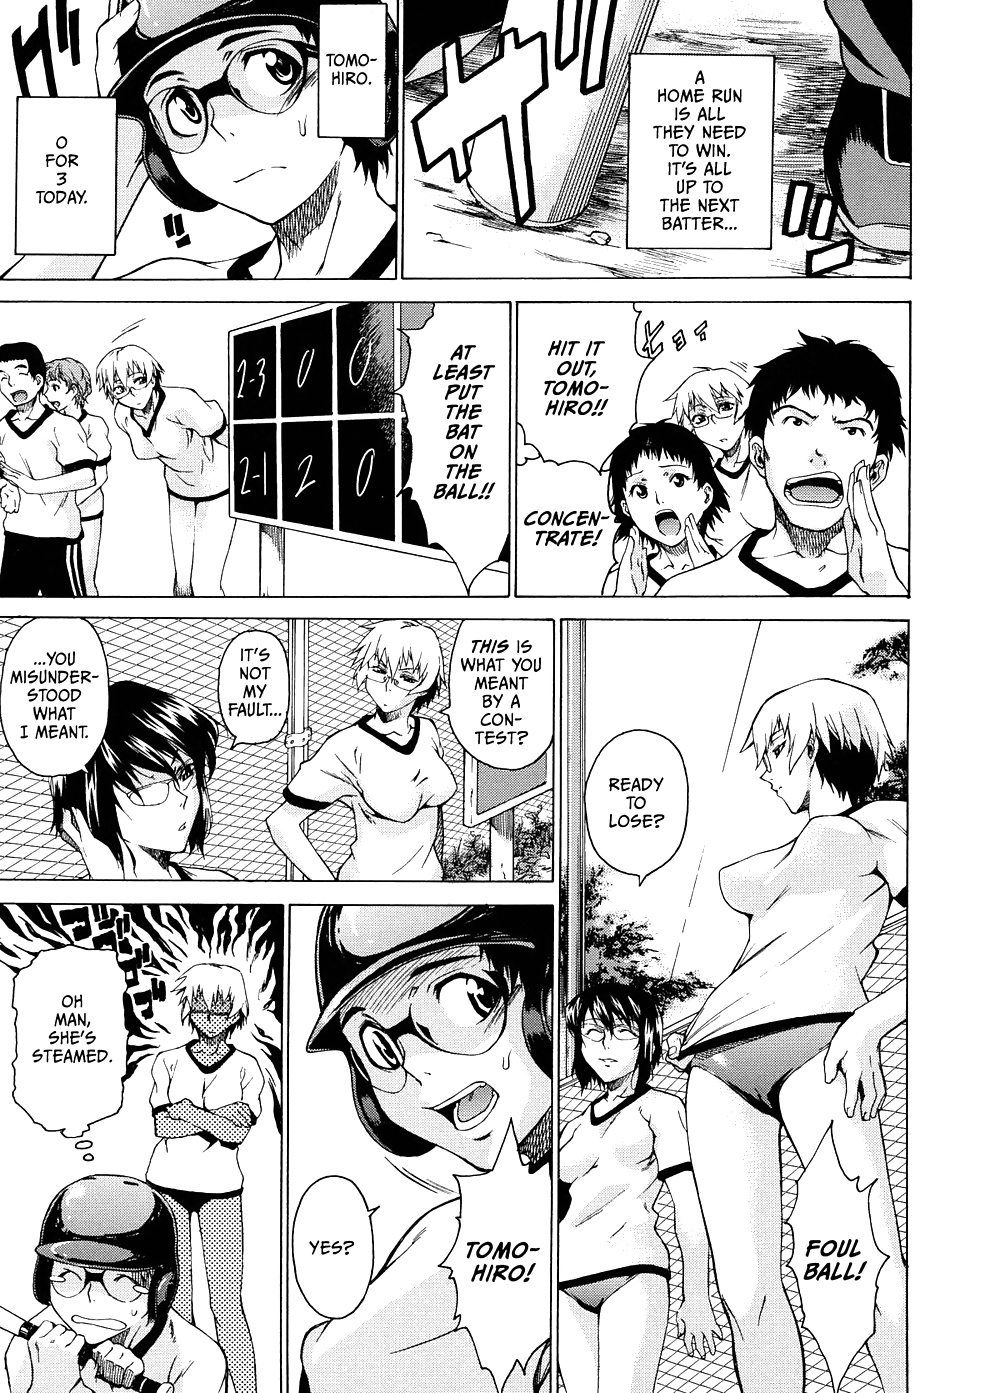 Domin-8 Me ( Take On me ) Hentai Manga Part 2 (45/98)